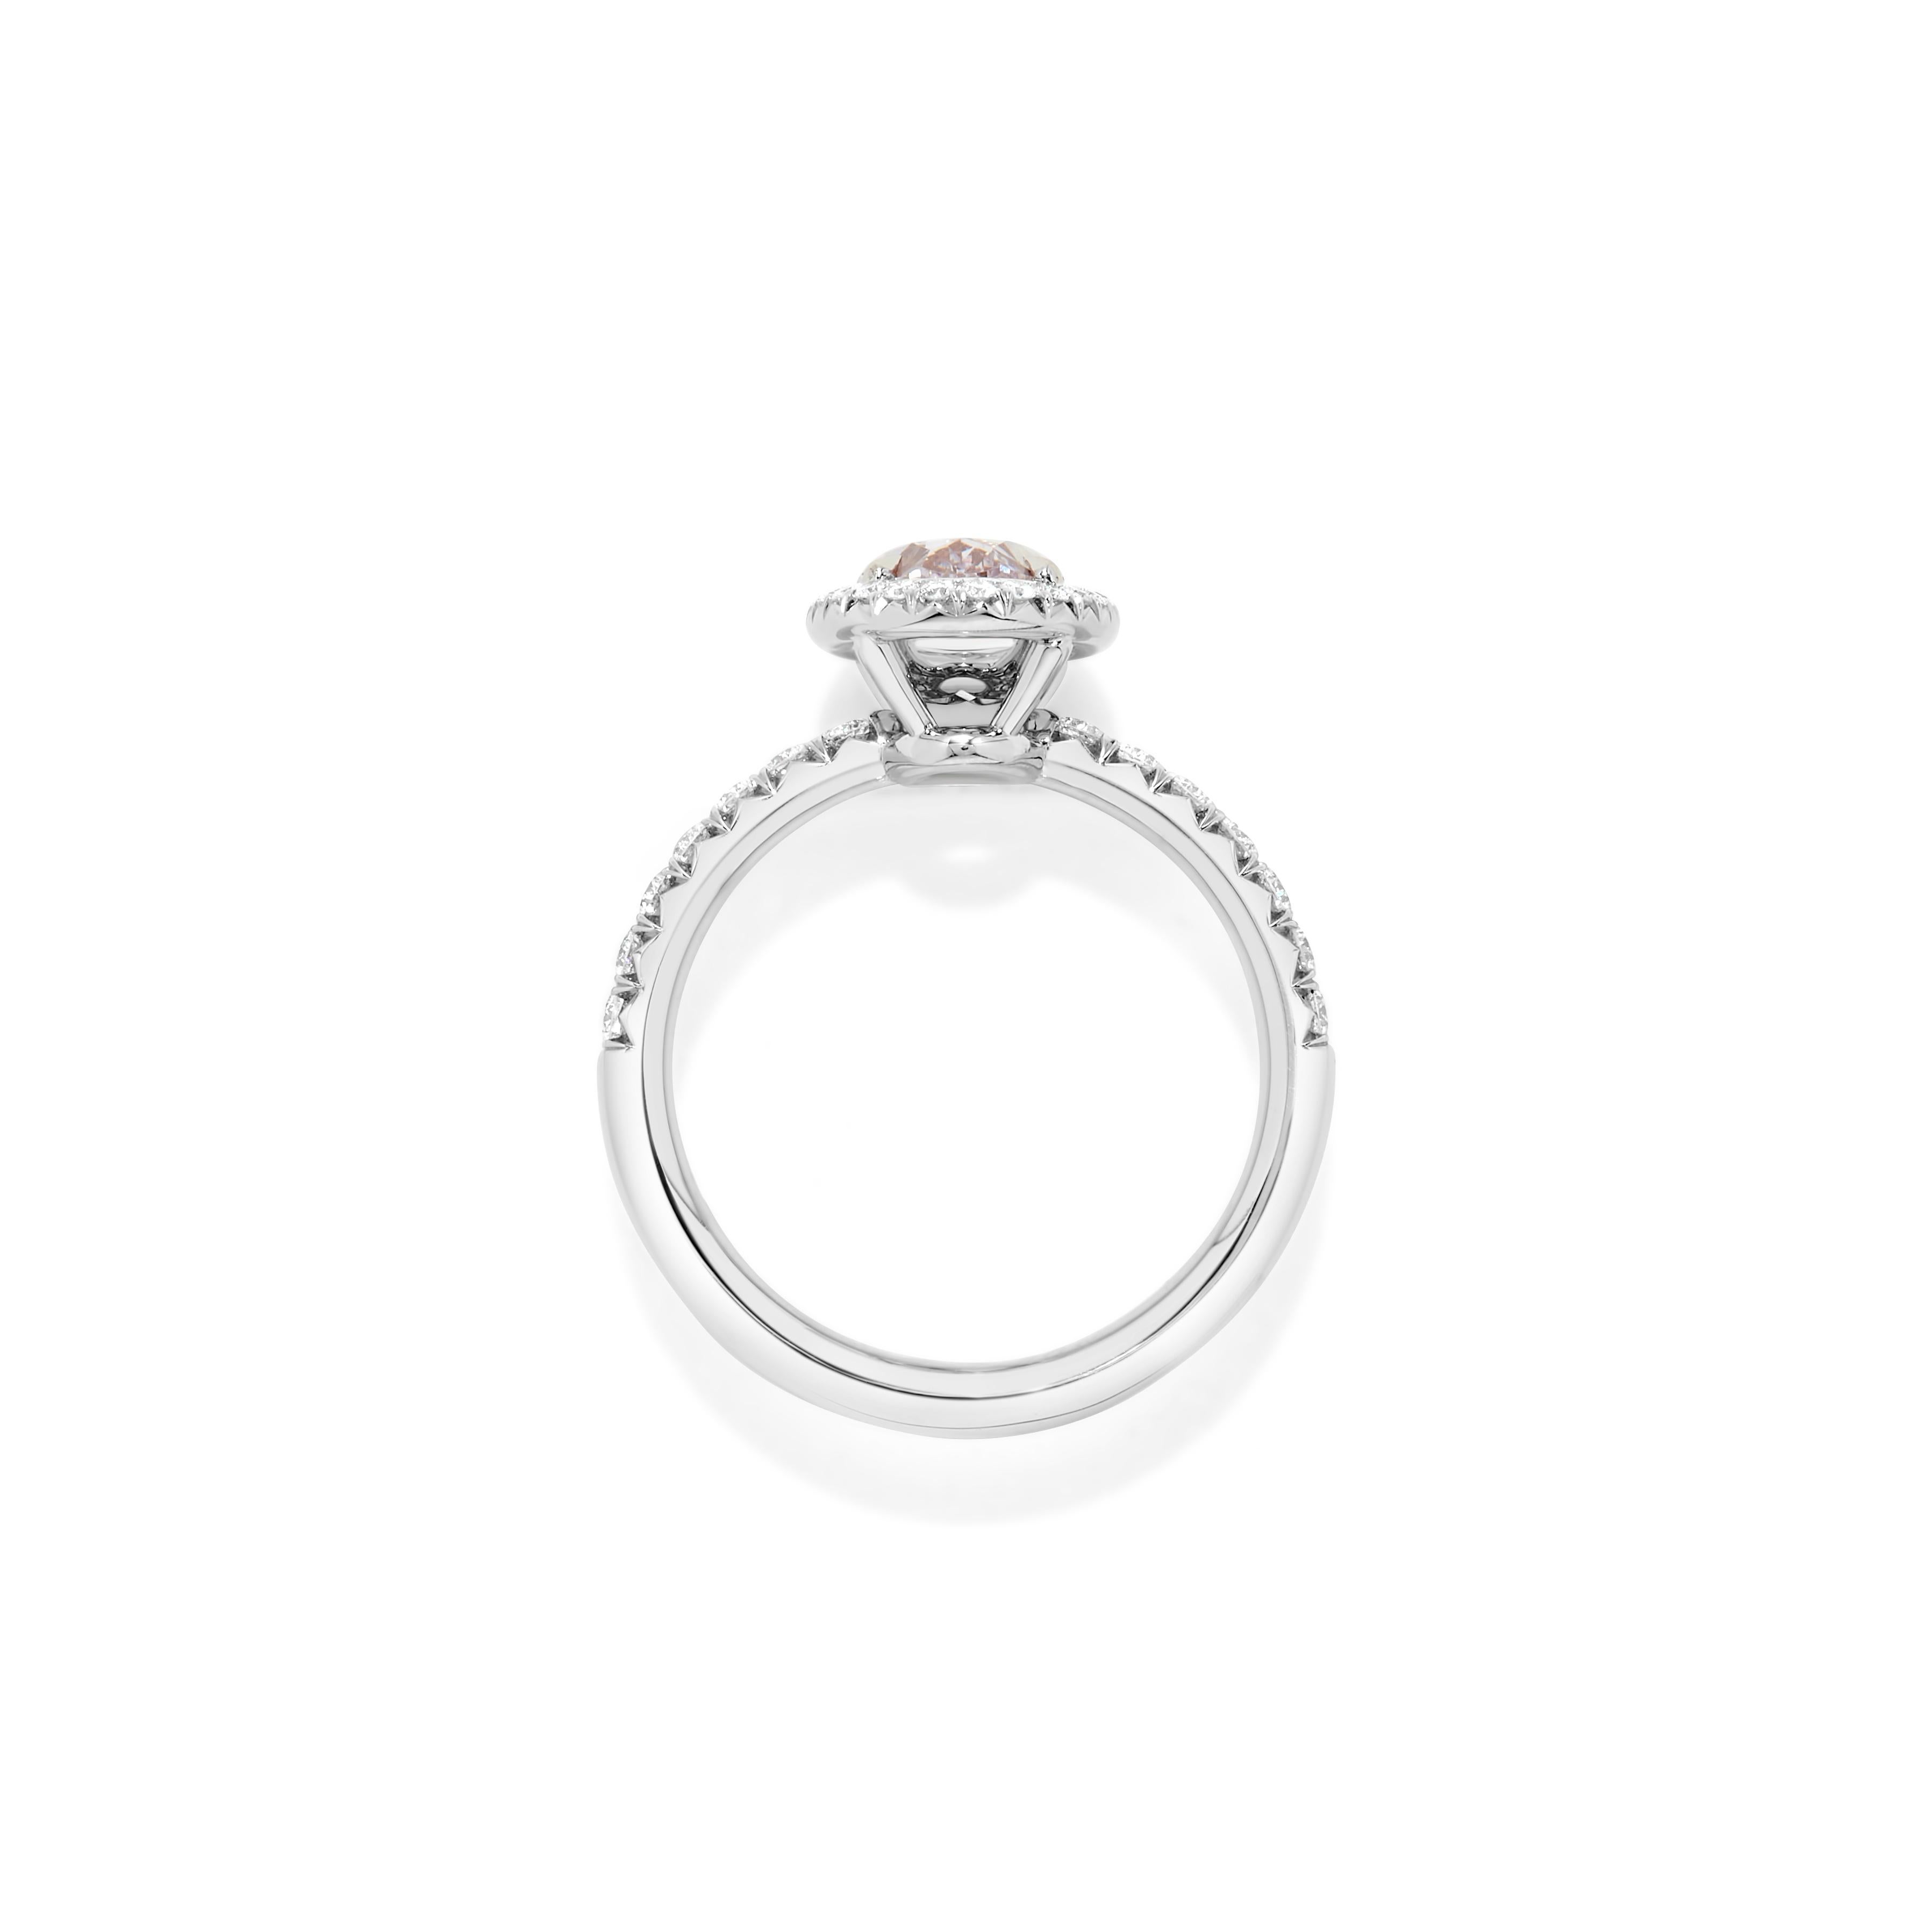 2 carat pink diamond ring